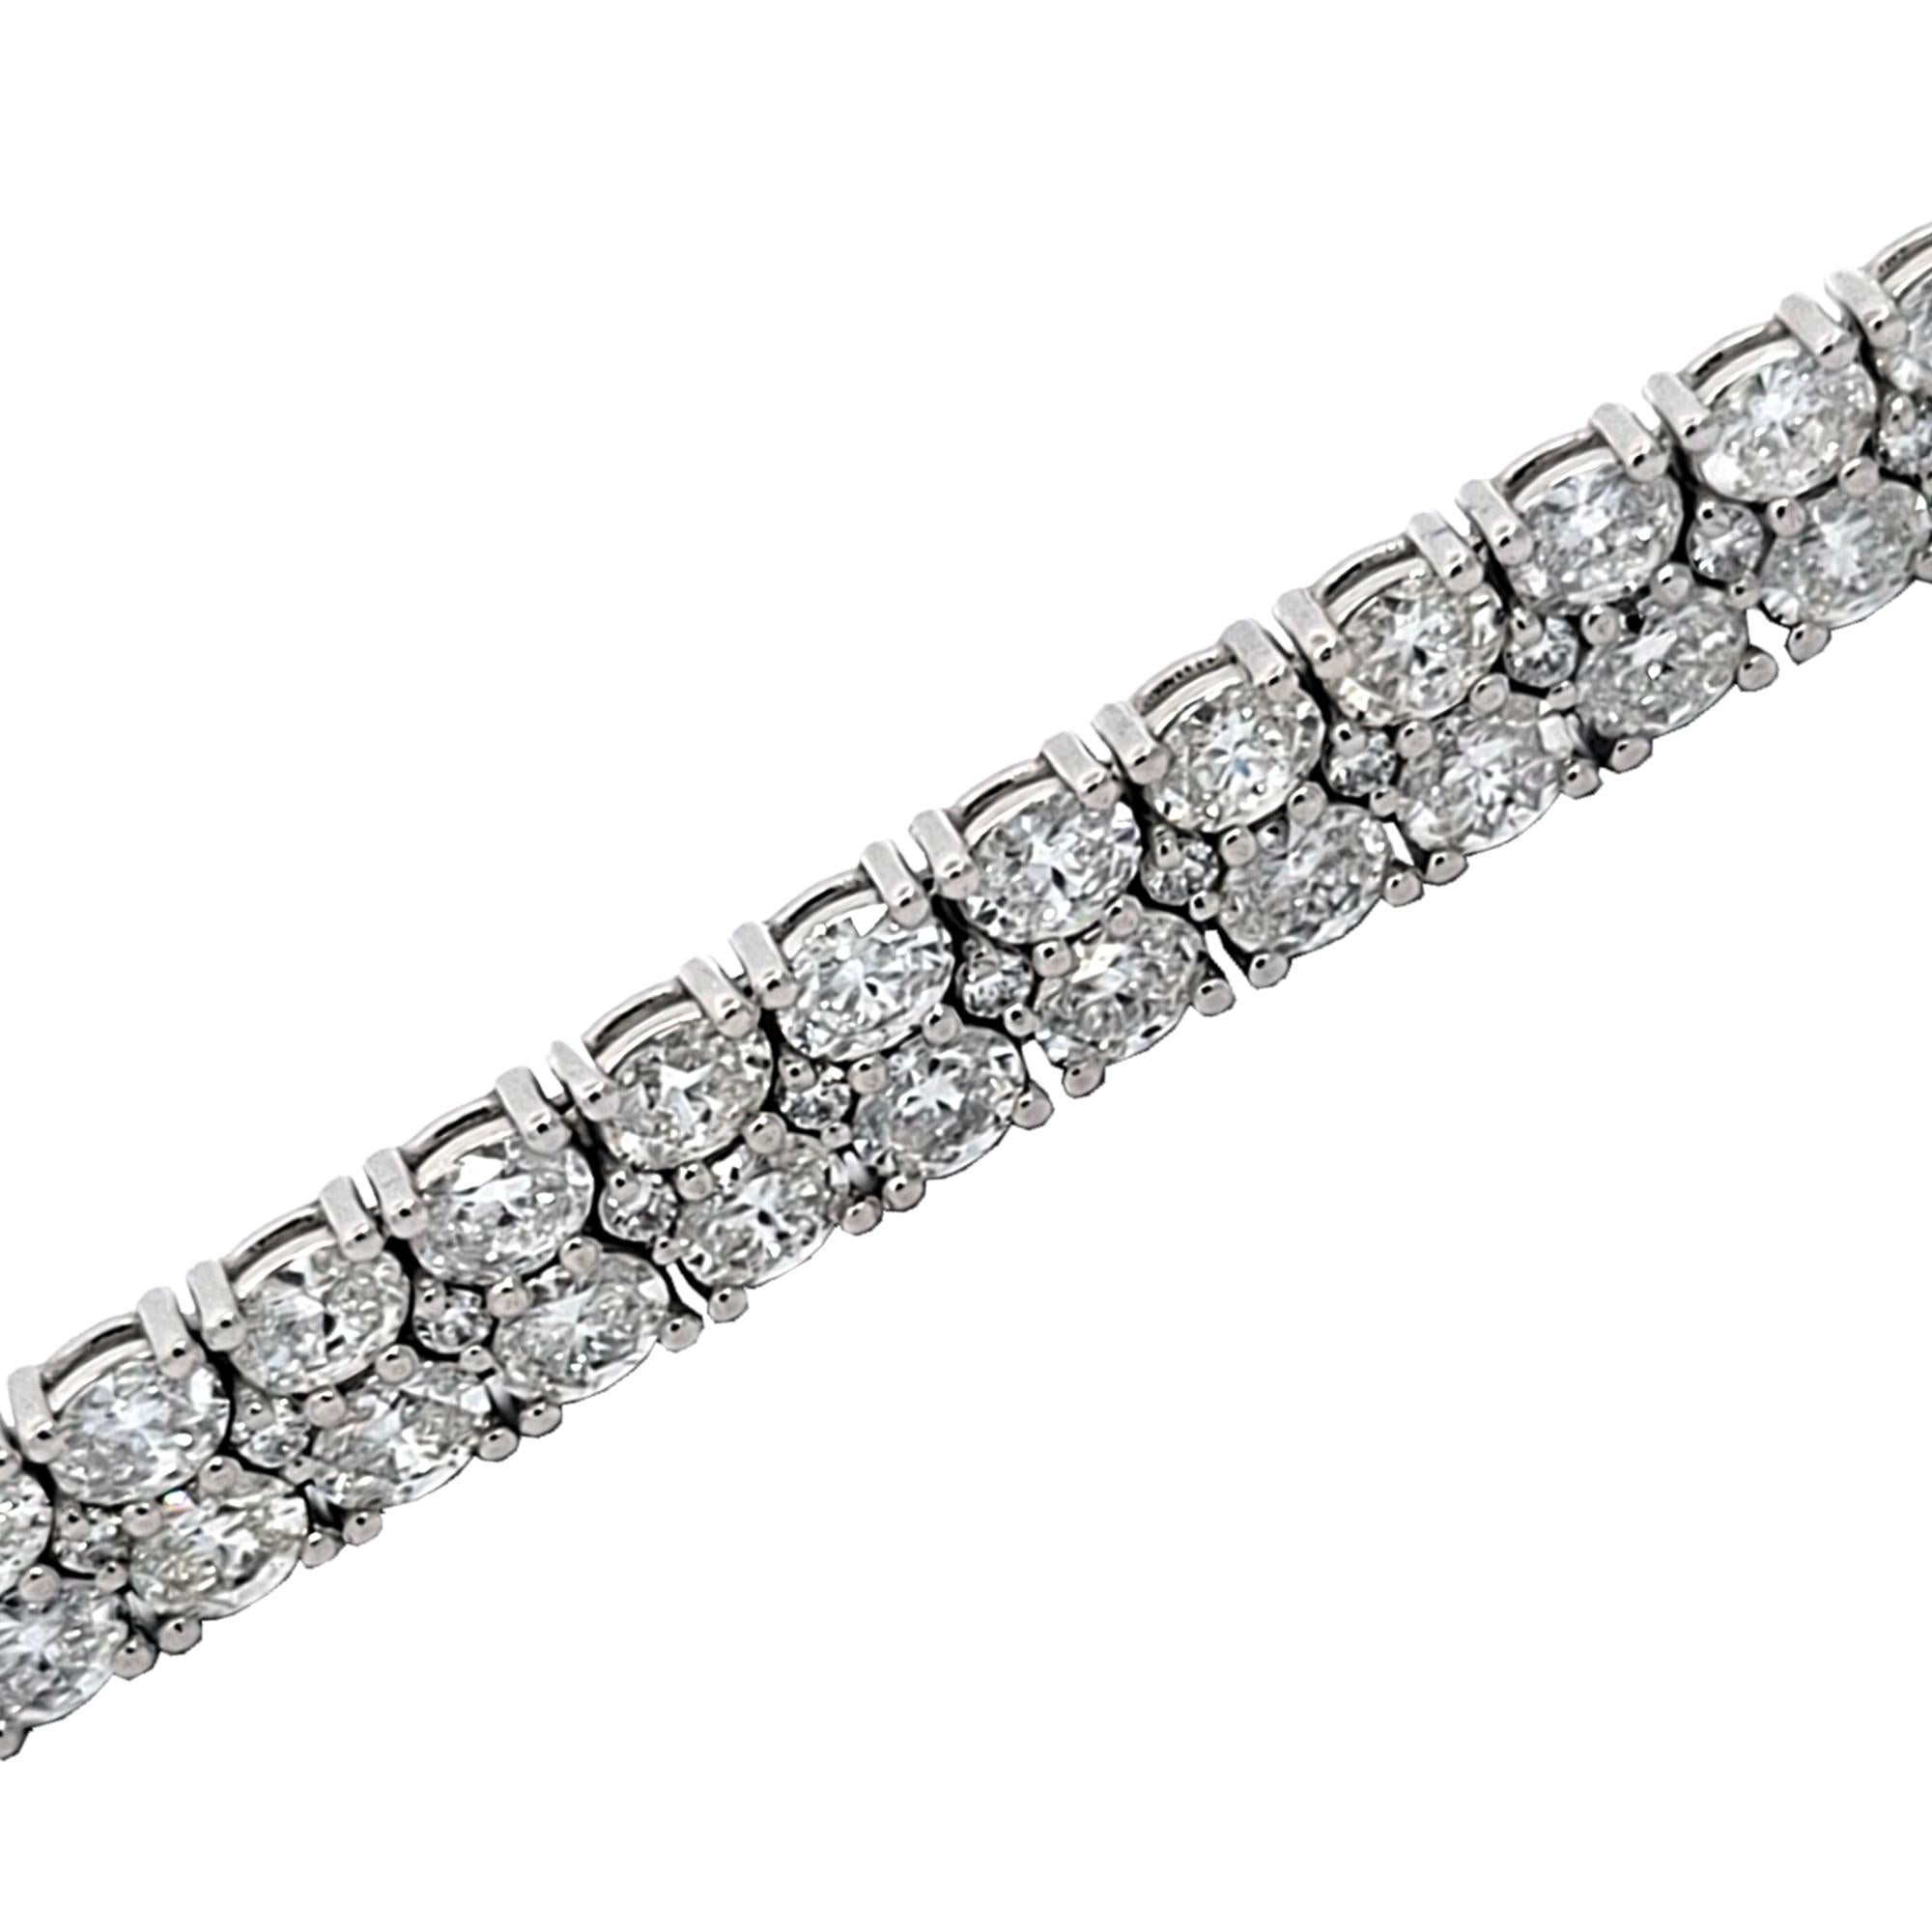 Cet élégant bracelet de tennis en diamant se compose de 41 maillons de diamants ovales/ronds brillants à double rangée sertis en platine. Il mesure 7 pouces de long et environ 7 mm de large.  Ce bracelet est fabriqué selon des méthodes artisanales